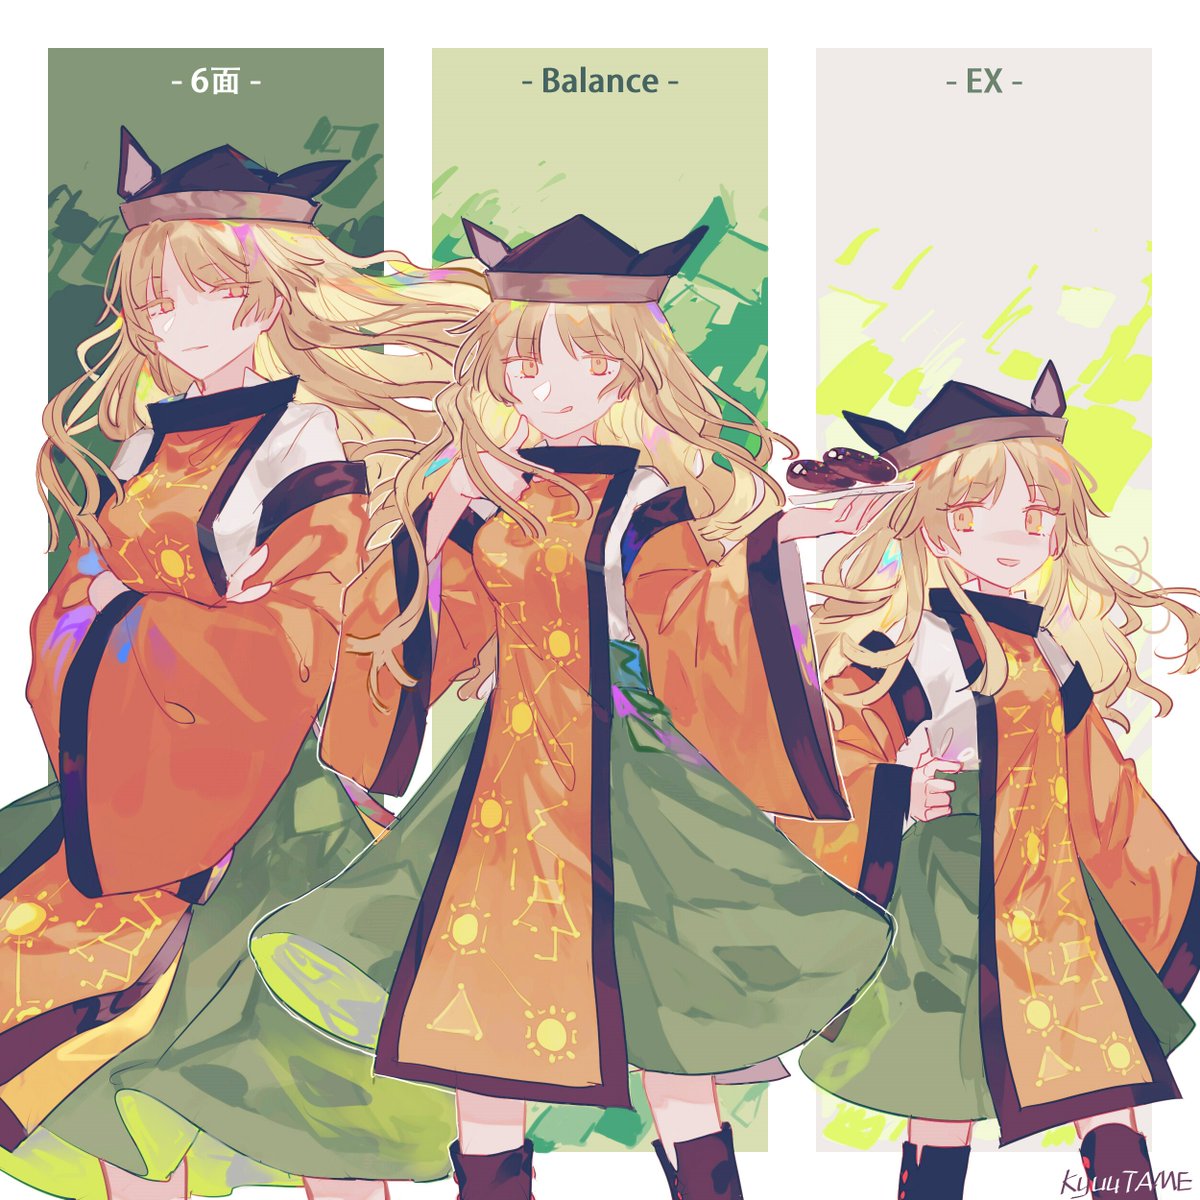 matara okina long hair blonde hair green skirt skirt hat 1girl tabard  illustration images